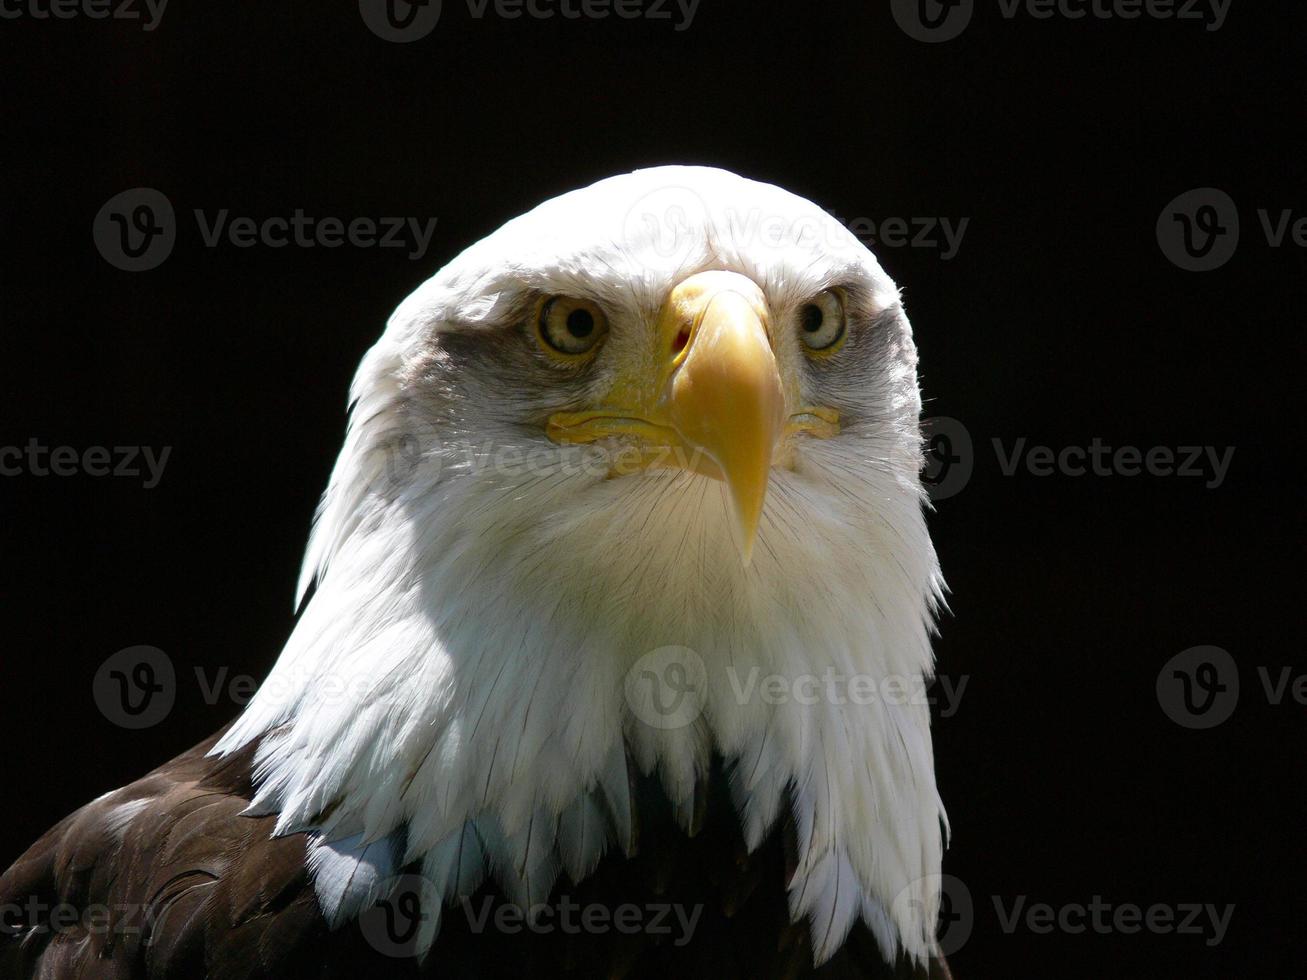 American Bald Eagle photo